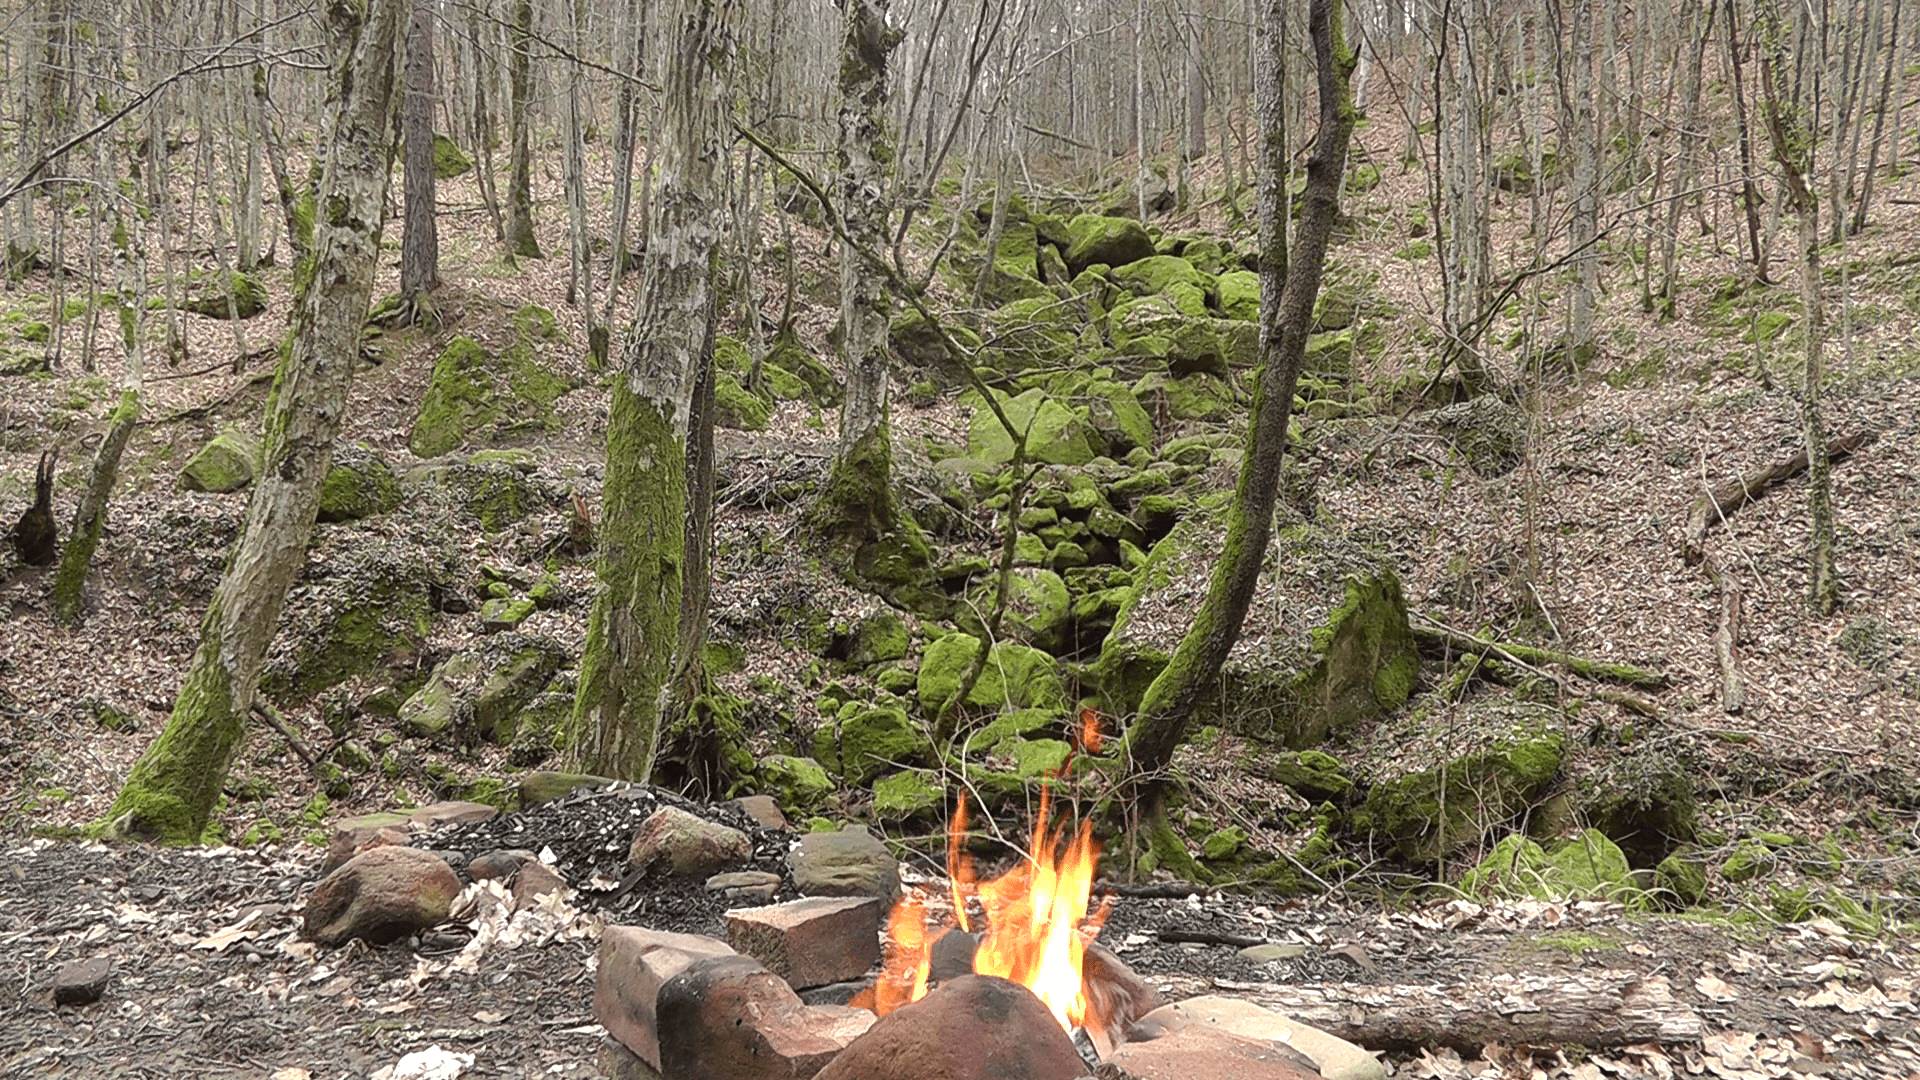 Звуки природы: В лесу у костра. Расслабляющая музыка для медитации и отдыха